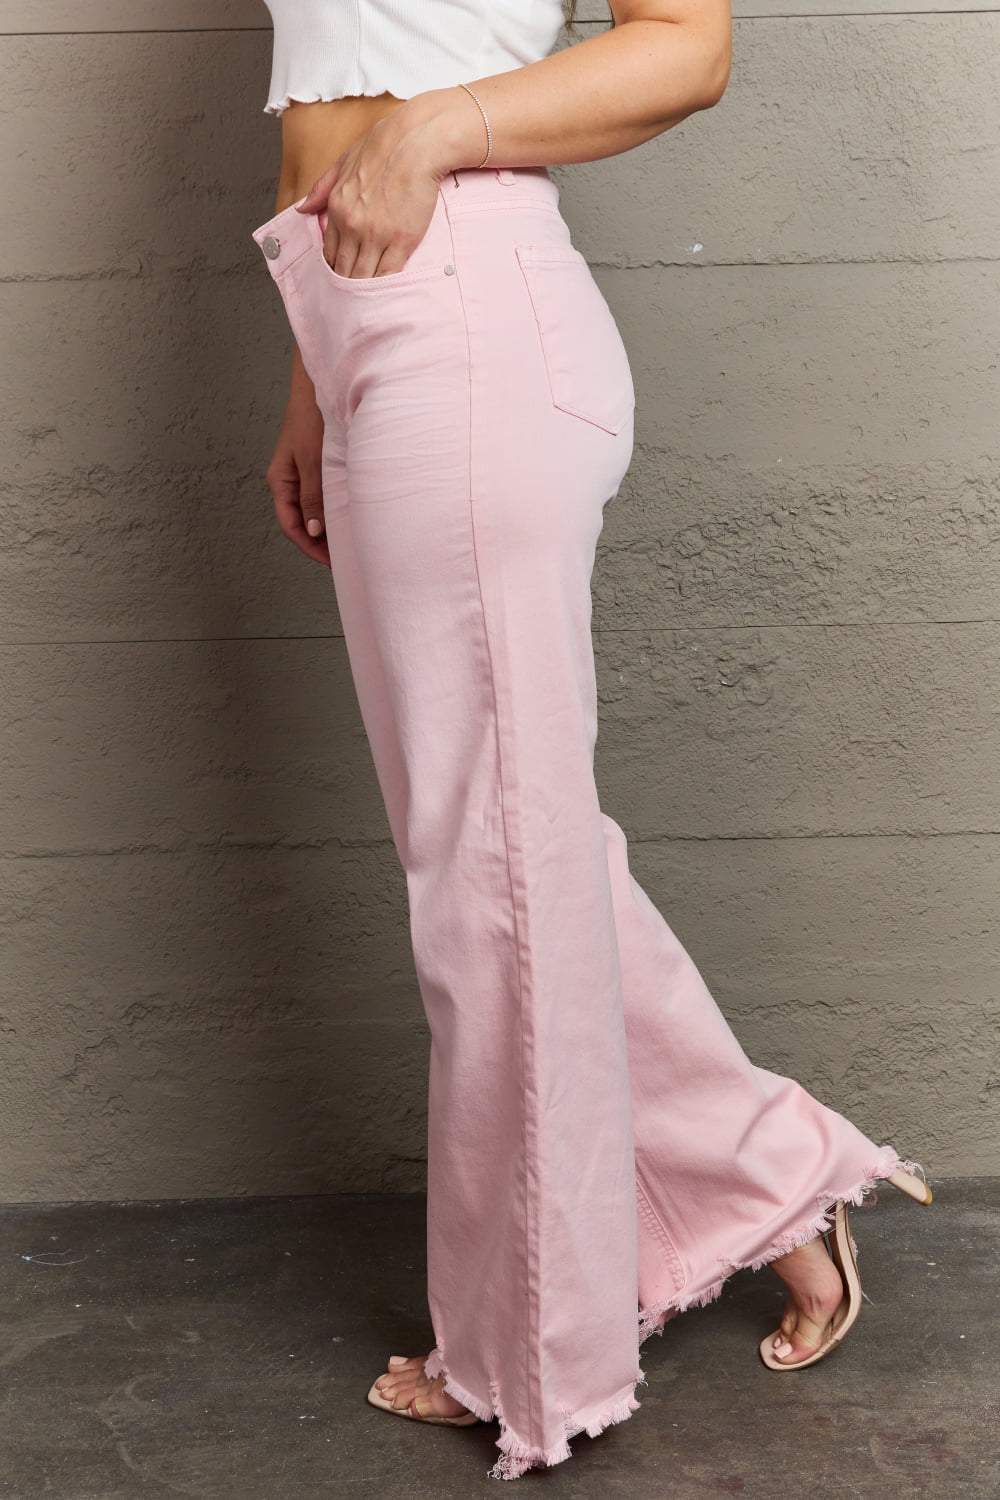 RISEN Raelene Full Size High Waist Wide Leg Jeans in Light Pink - pvmark